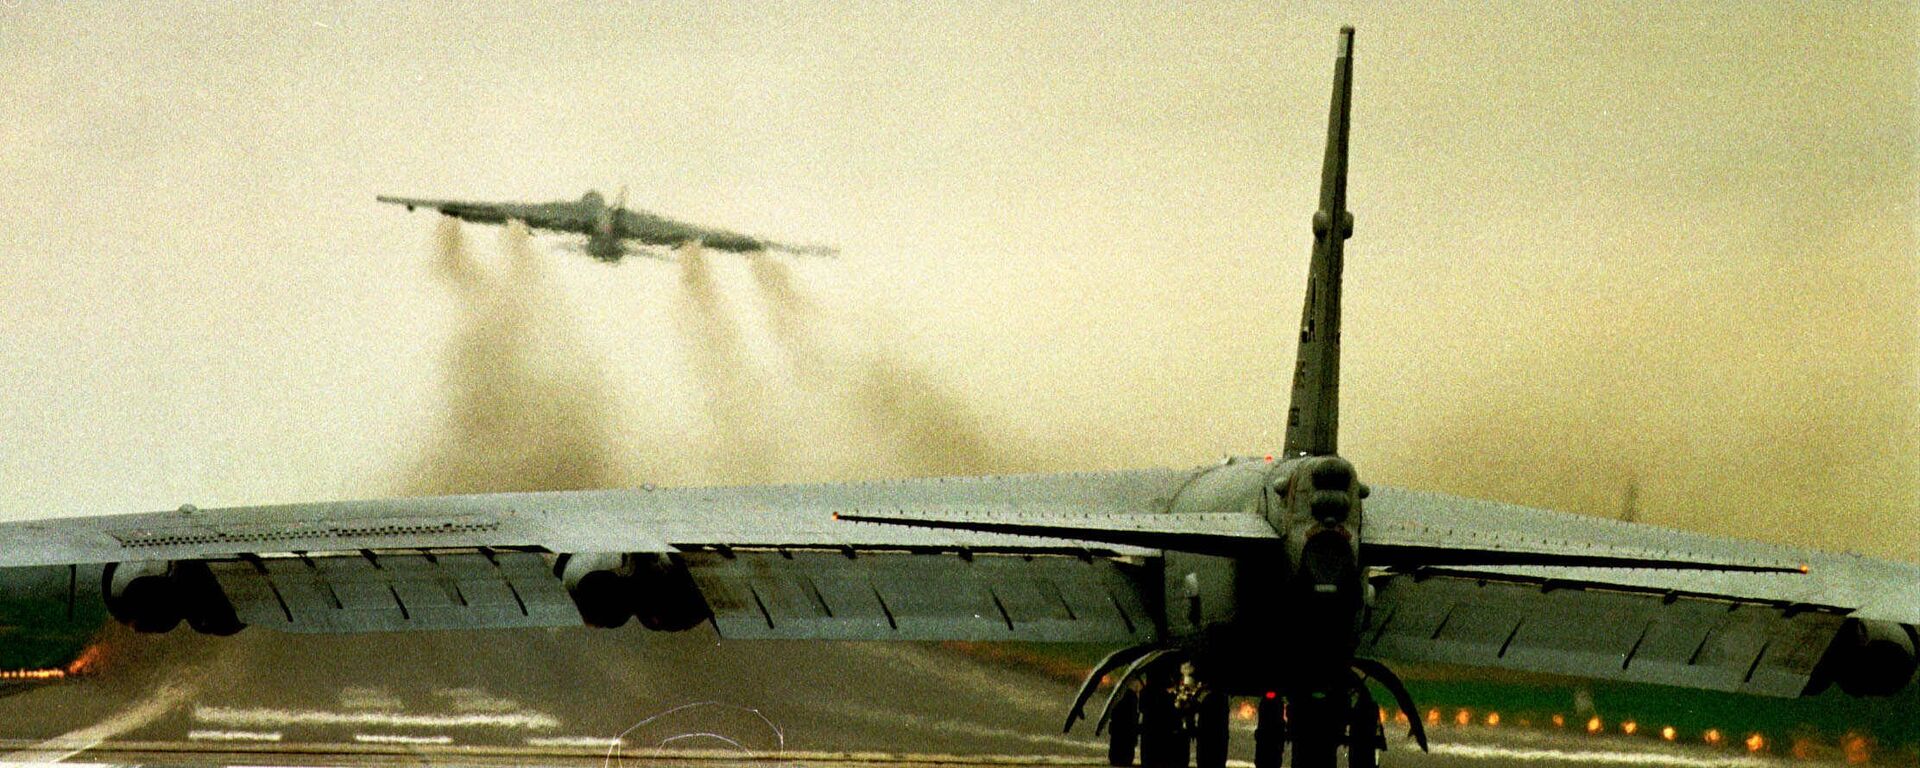 НАТО авиони Б-52 узлећу са британског аеродрома Фејрфорд током бомбардовања СРЈ 1999. - Sputnik Србија, 1920, 27.02.2022